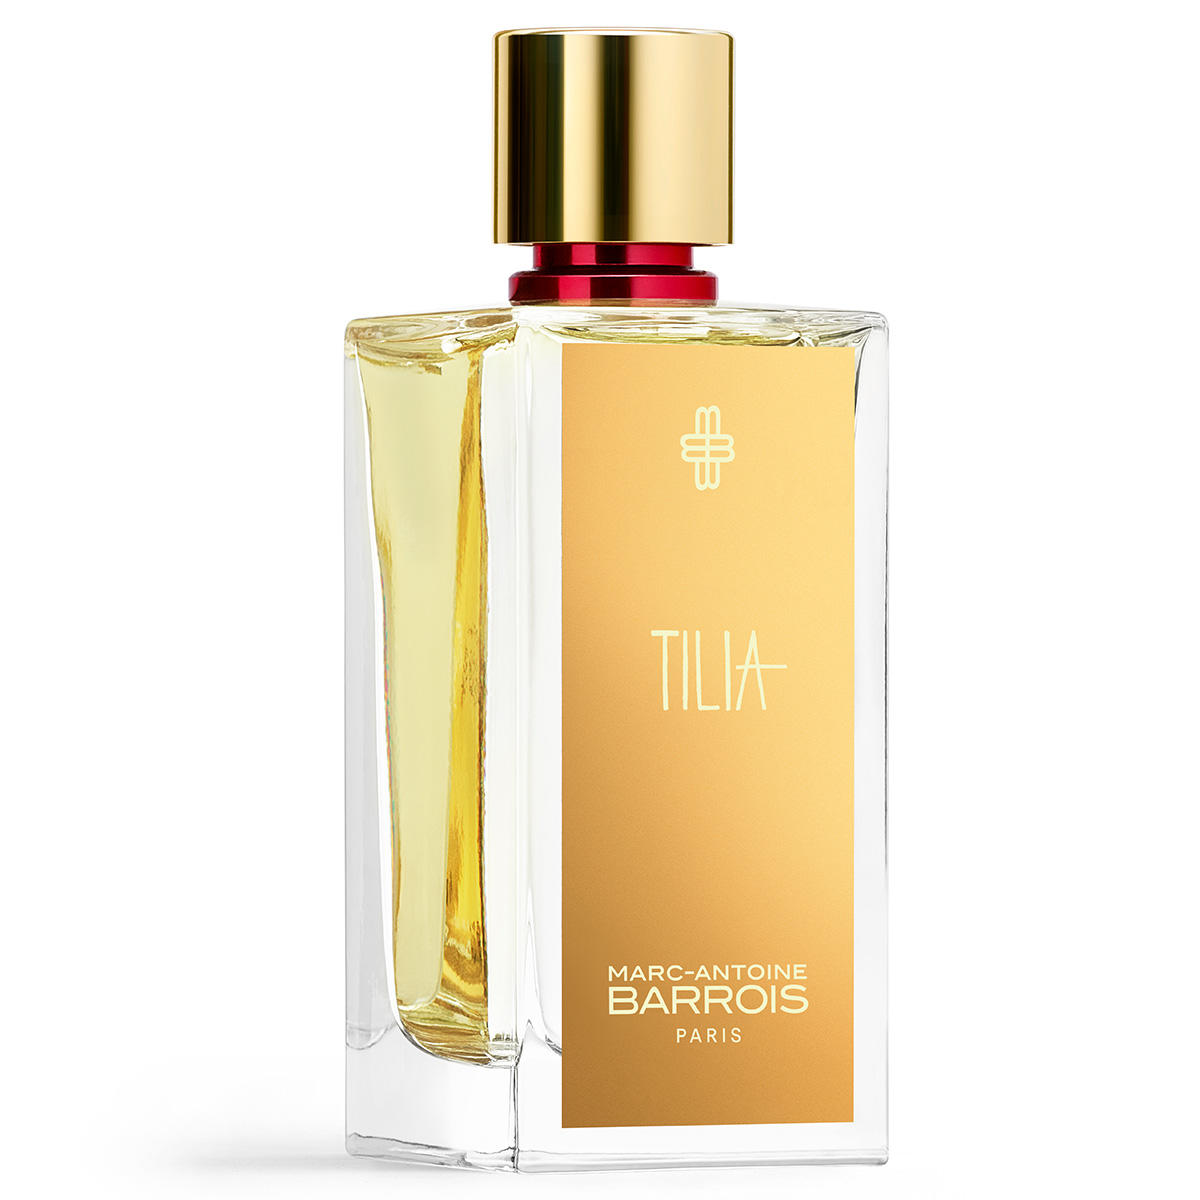 Marc-Antoine Barrois Tilia Eau de Parfum 100 ml - 2